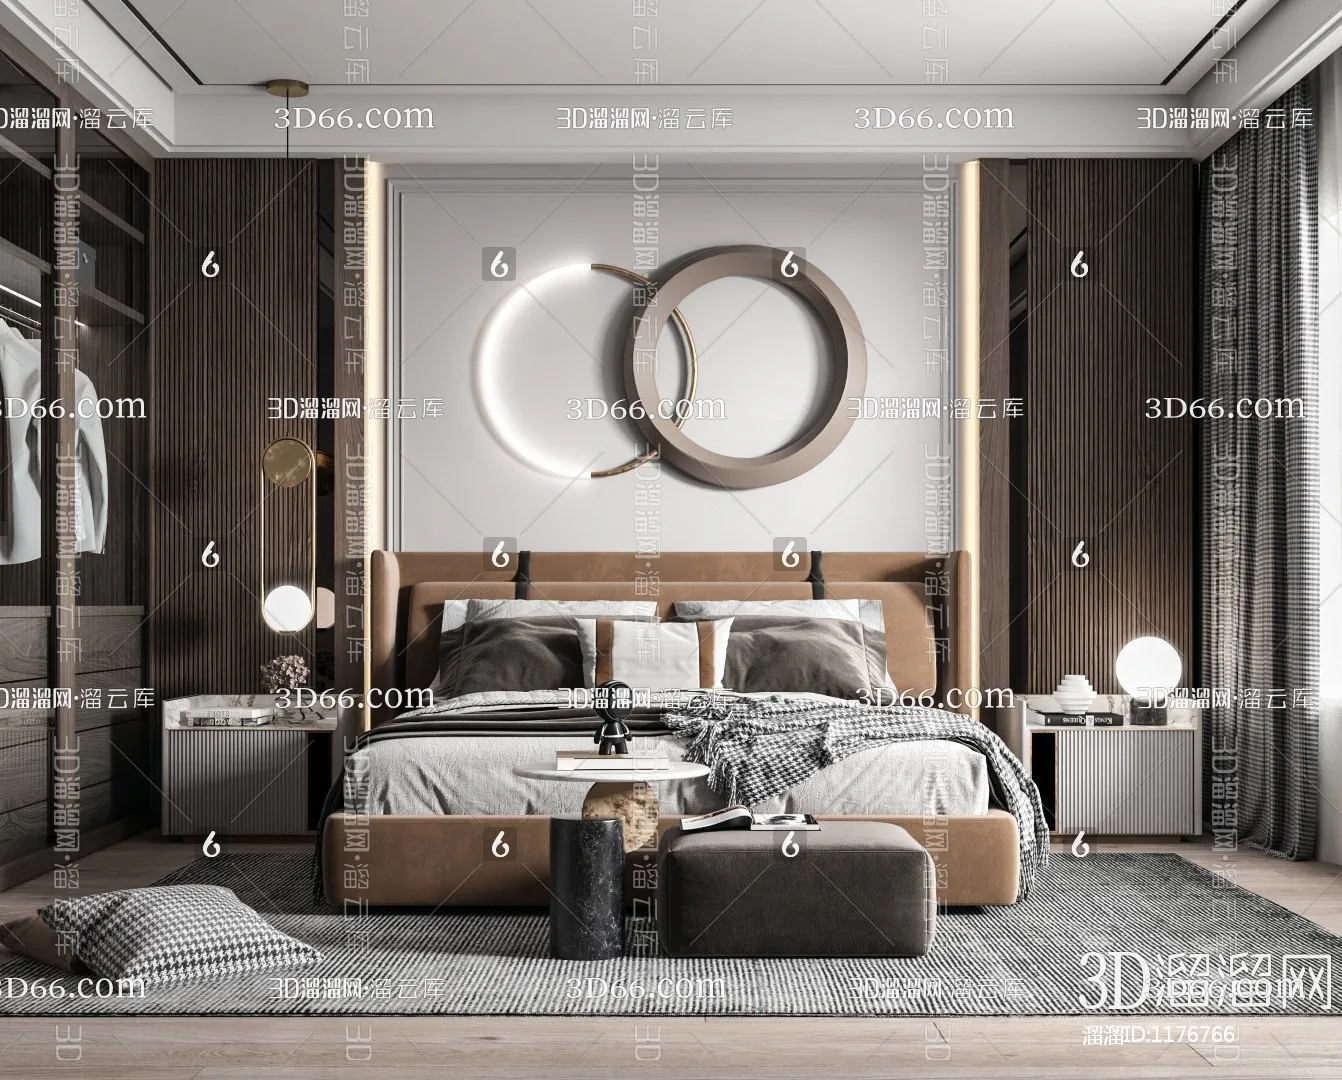 Bedroom 3D Scenes – 0192